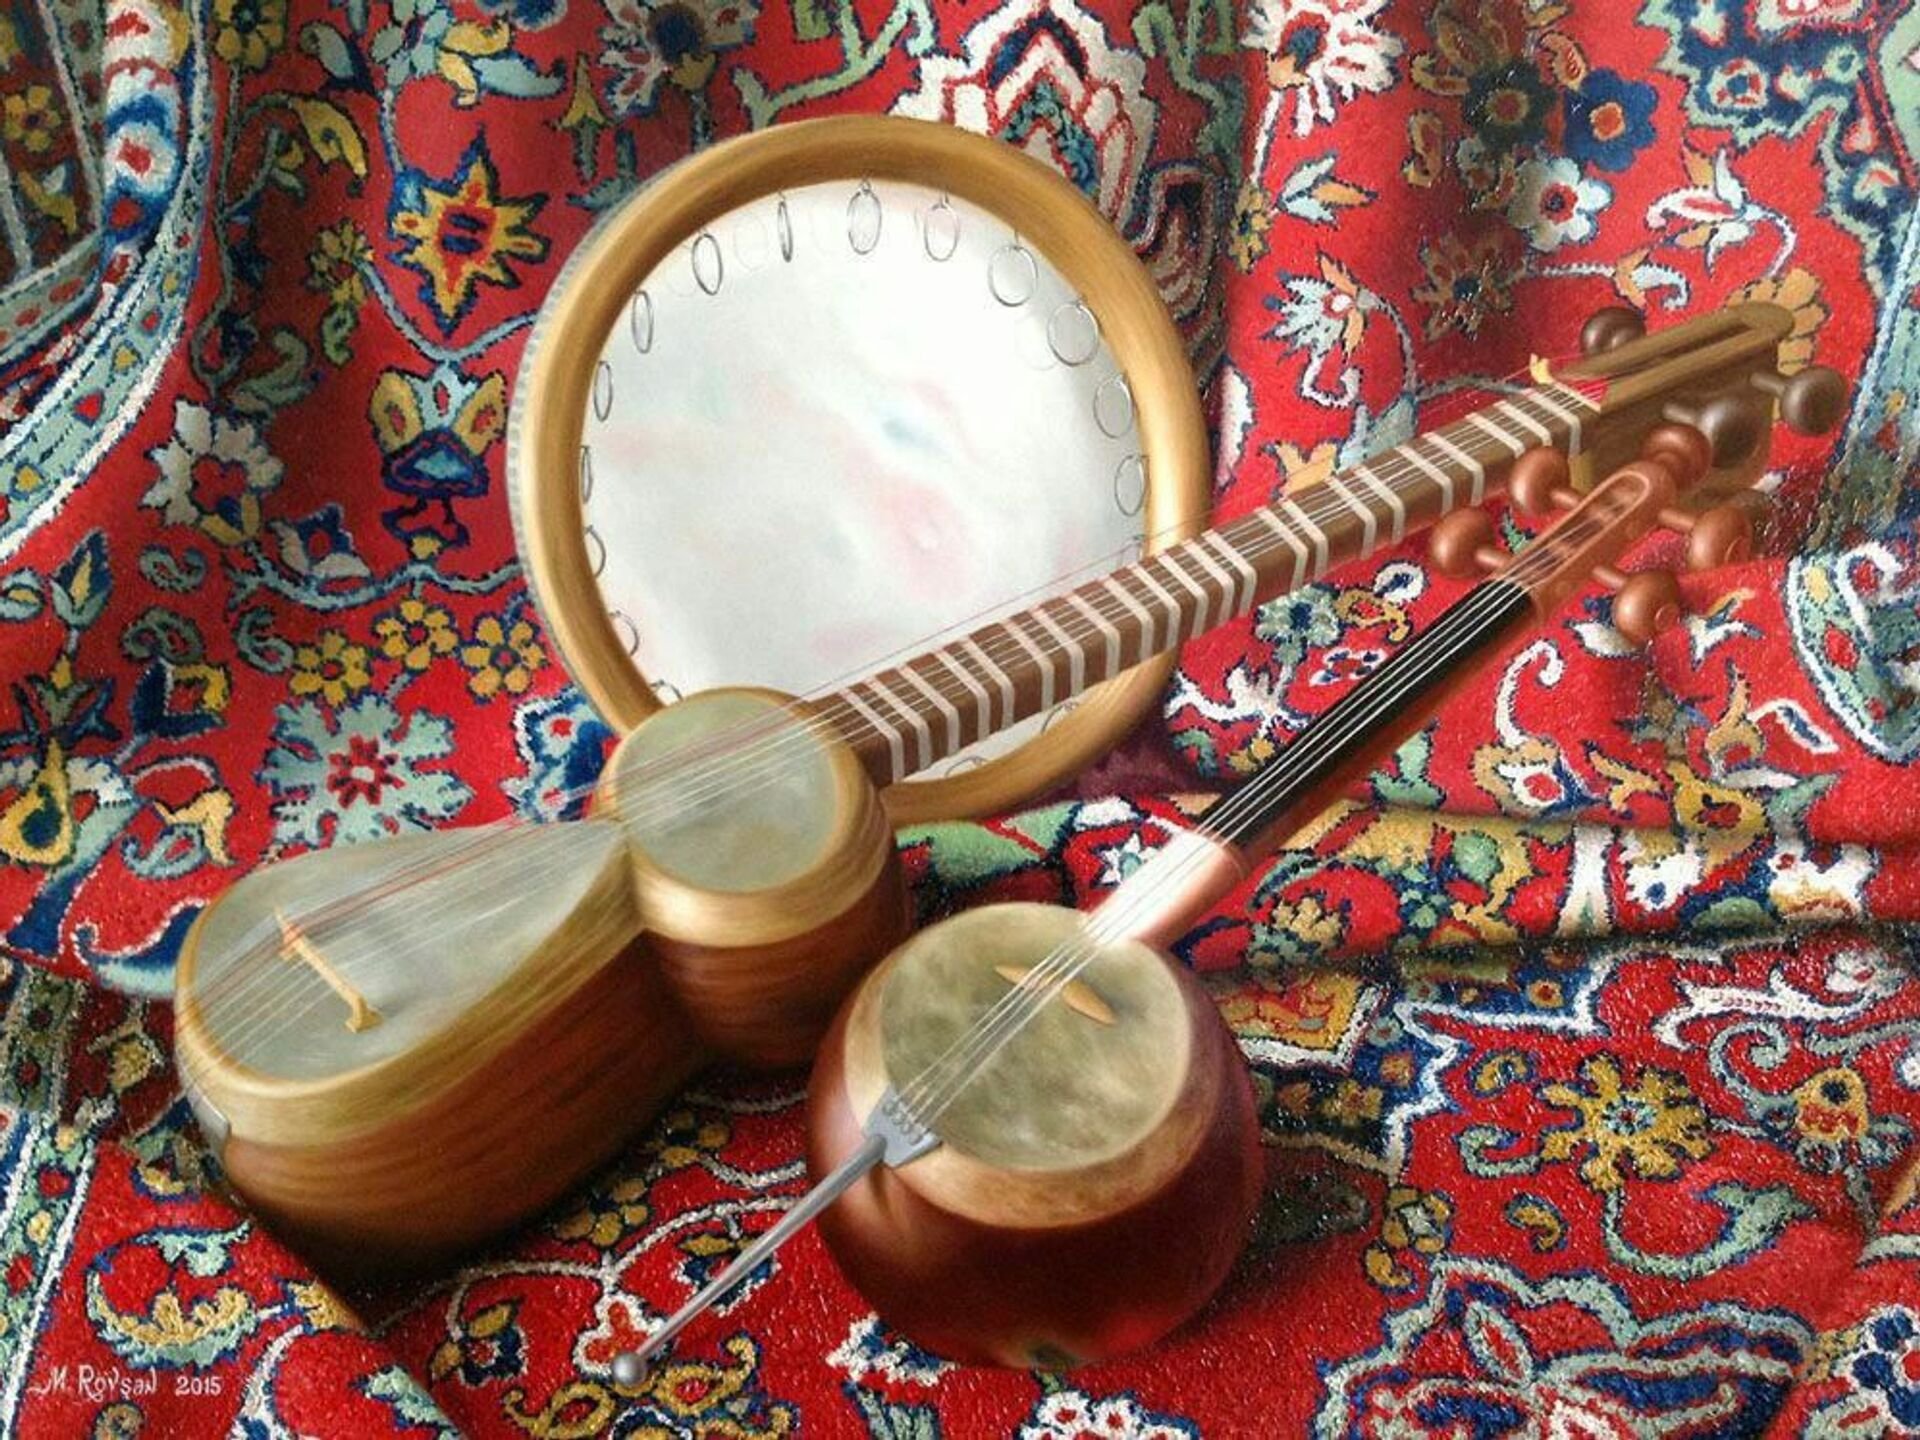 Musiqa o. Узбекский музыкальный инструмент дойра. Узбекские музыкальные инструменты дутар. Народные инструменты Узбекистана дойра. Национальные музыкальные инструменты Таджикистана.